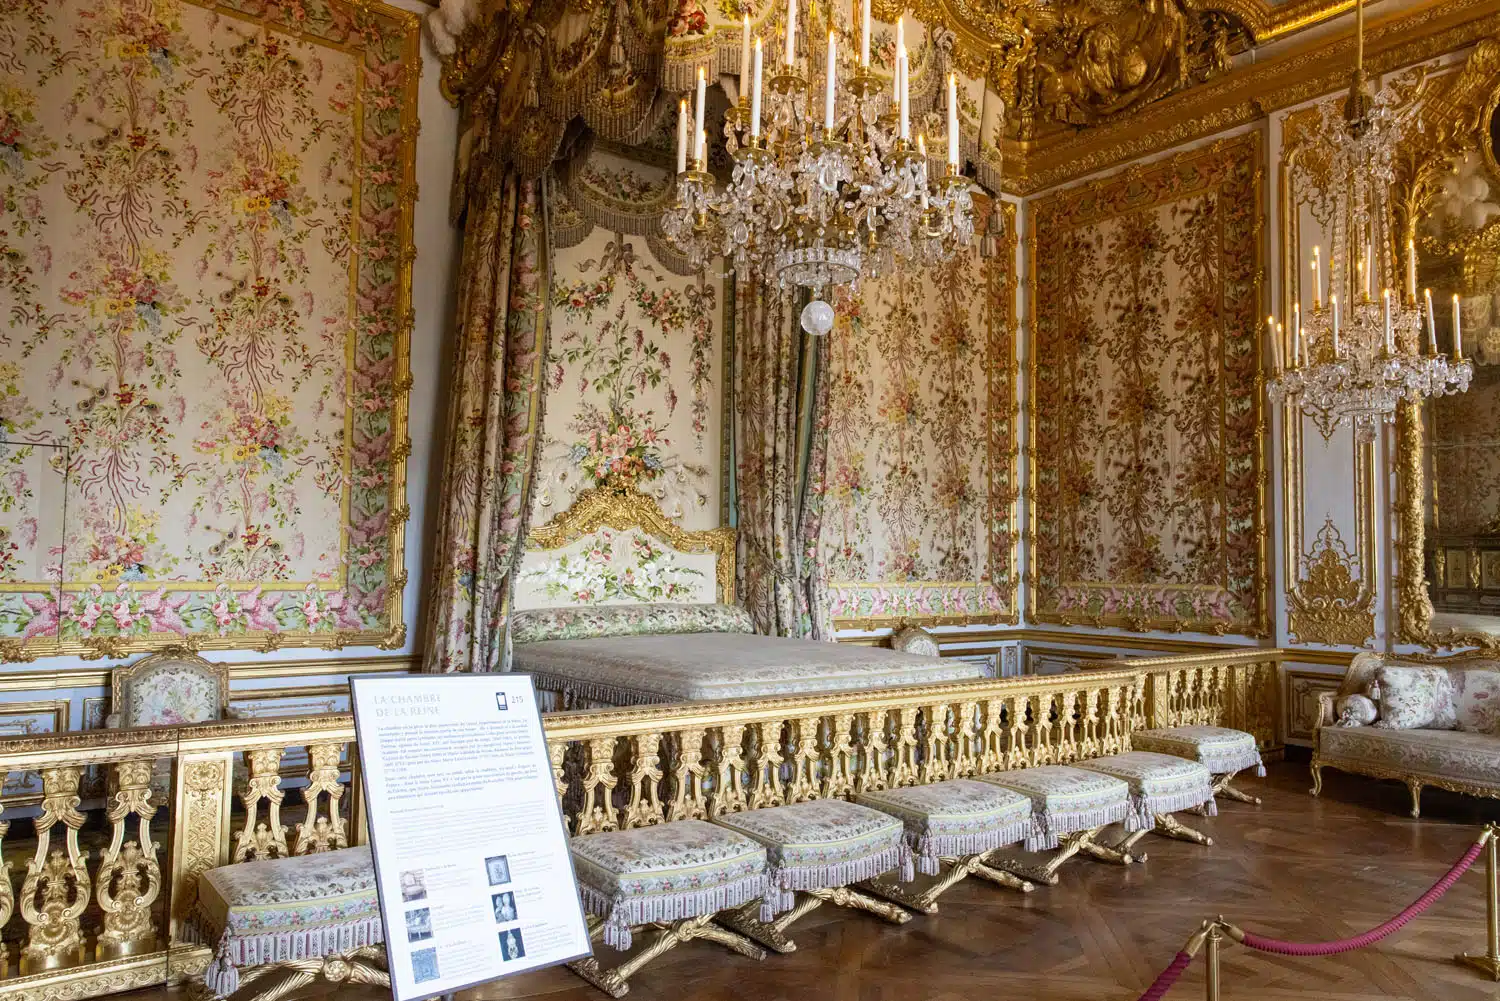 Queens Bedchamber | How to Visit Versailles